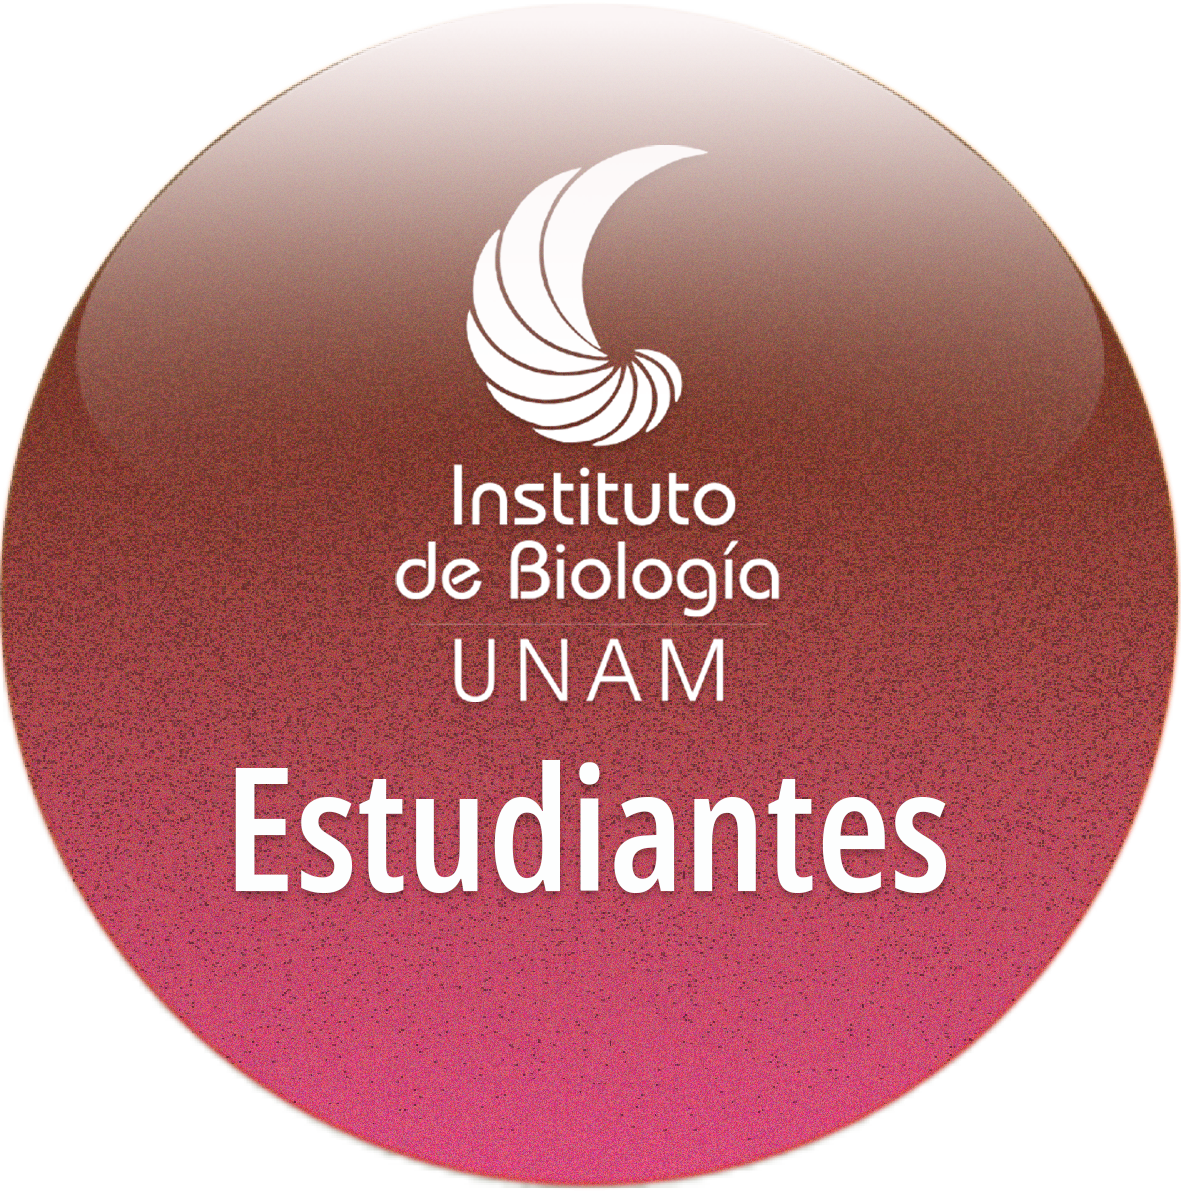 Estudiantes IBUNAM - Instituto de Biología, UNAM